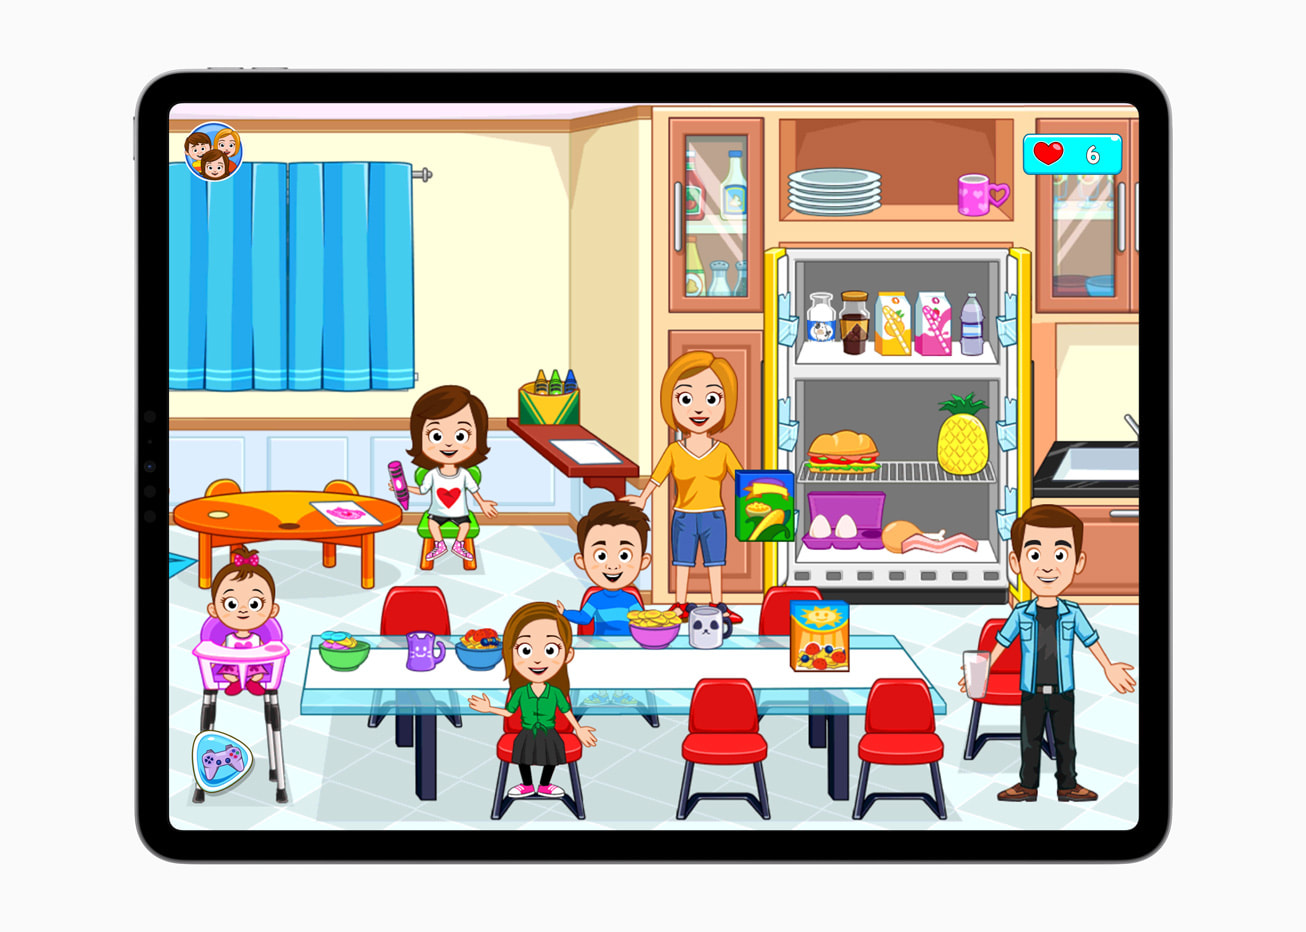 Sur l'iPad Pro, un calme du jeu My Town Home - Games Family + montre une famille de dessins animés dans une cuisine